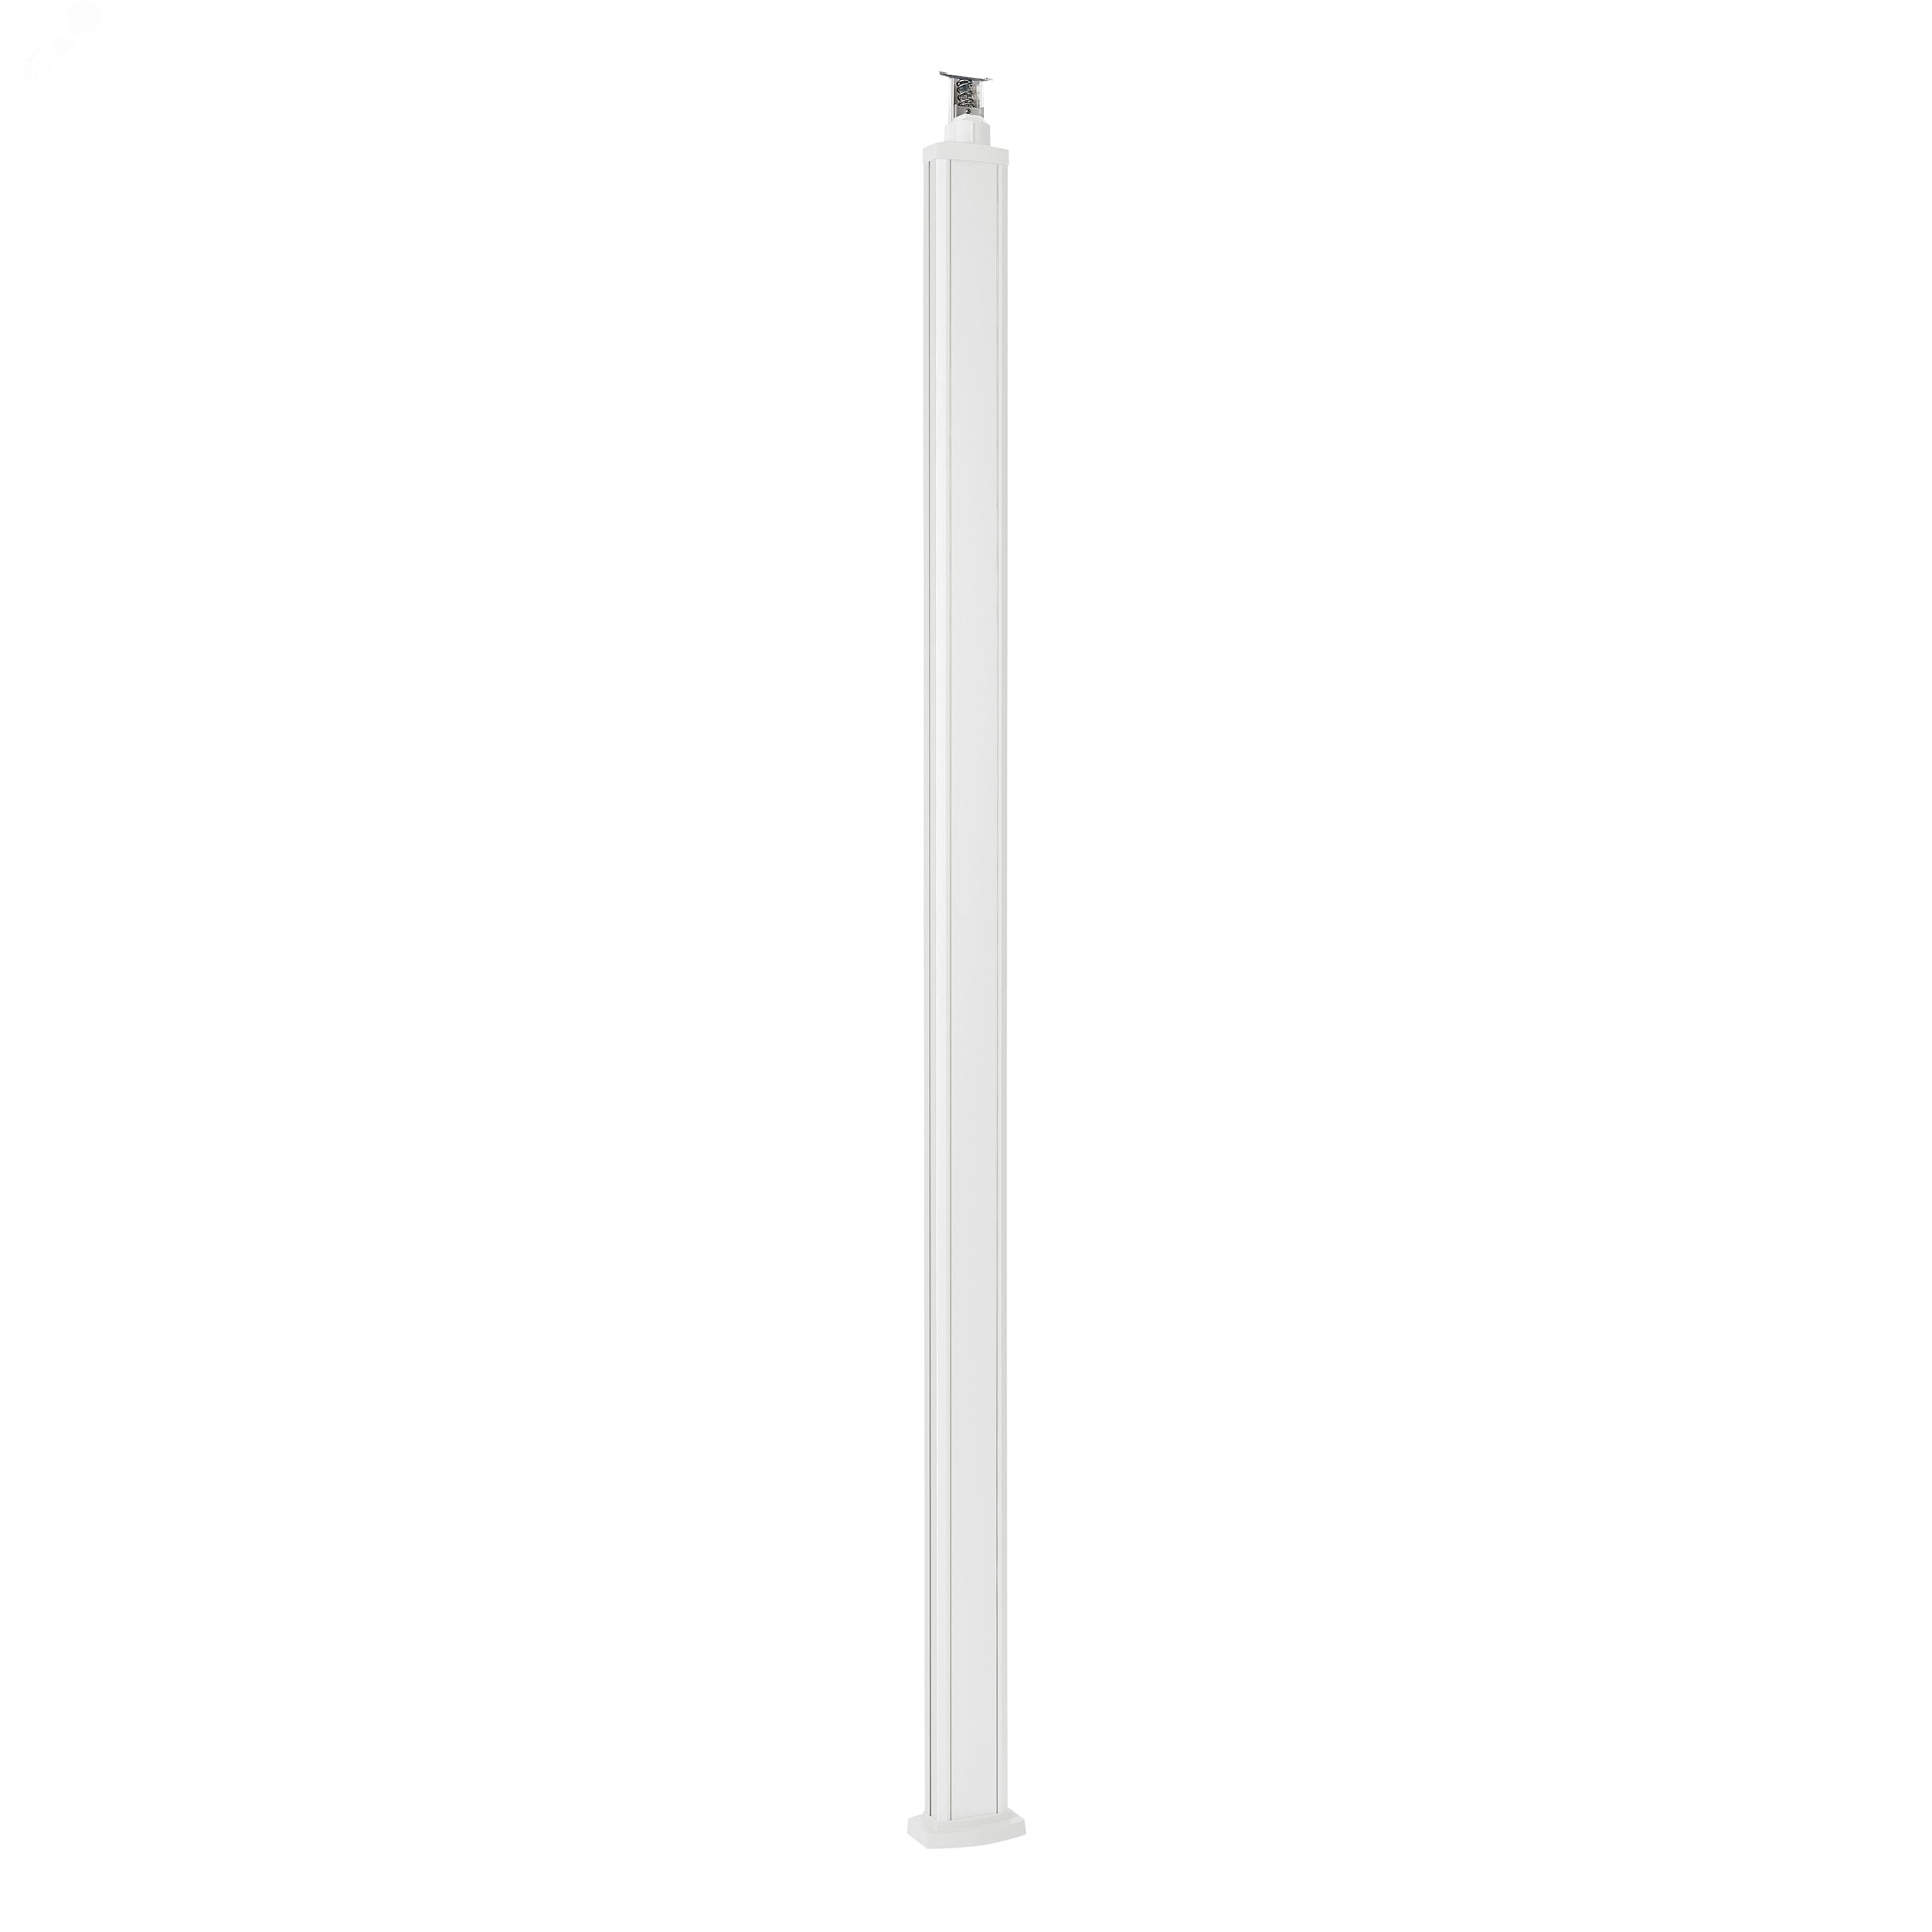 Универсальная колонна алюминиевая с крышкой из алюминия 1 секция, высота 2,77 метра, с возможностью увеличения высоты до 4,05 метра, цвет белый 653110 Legrand - превью 2